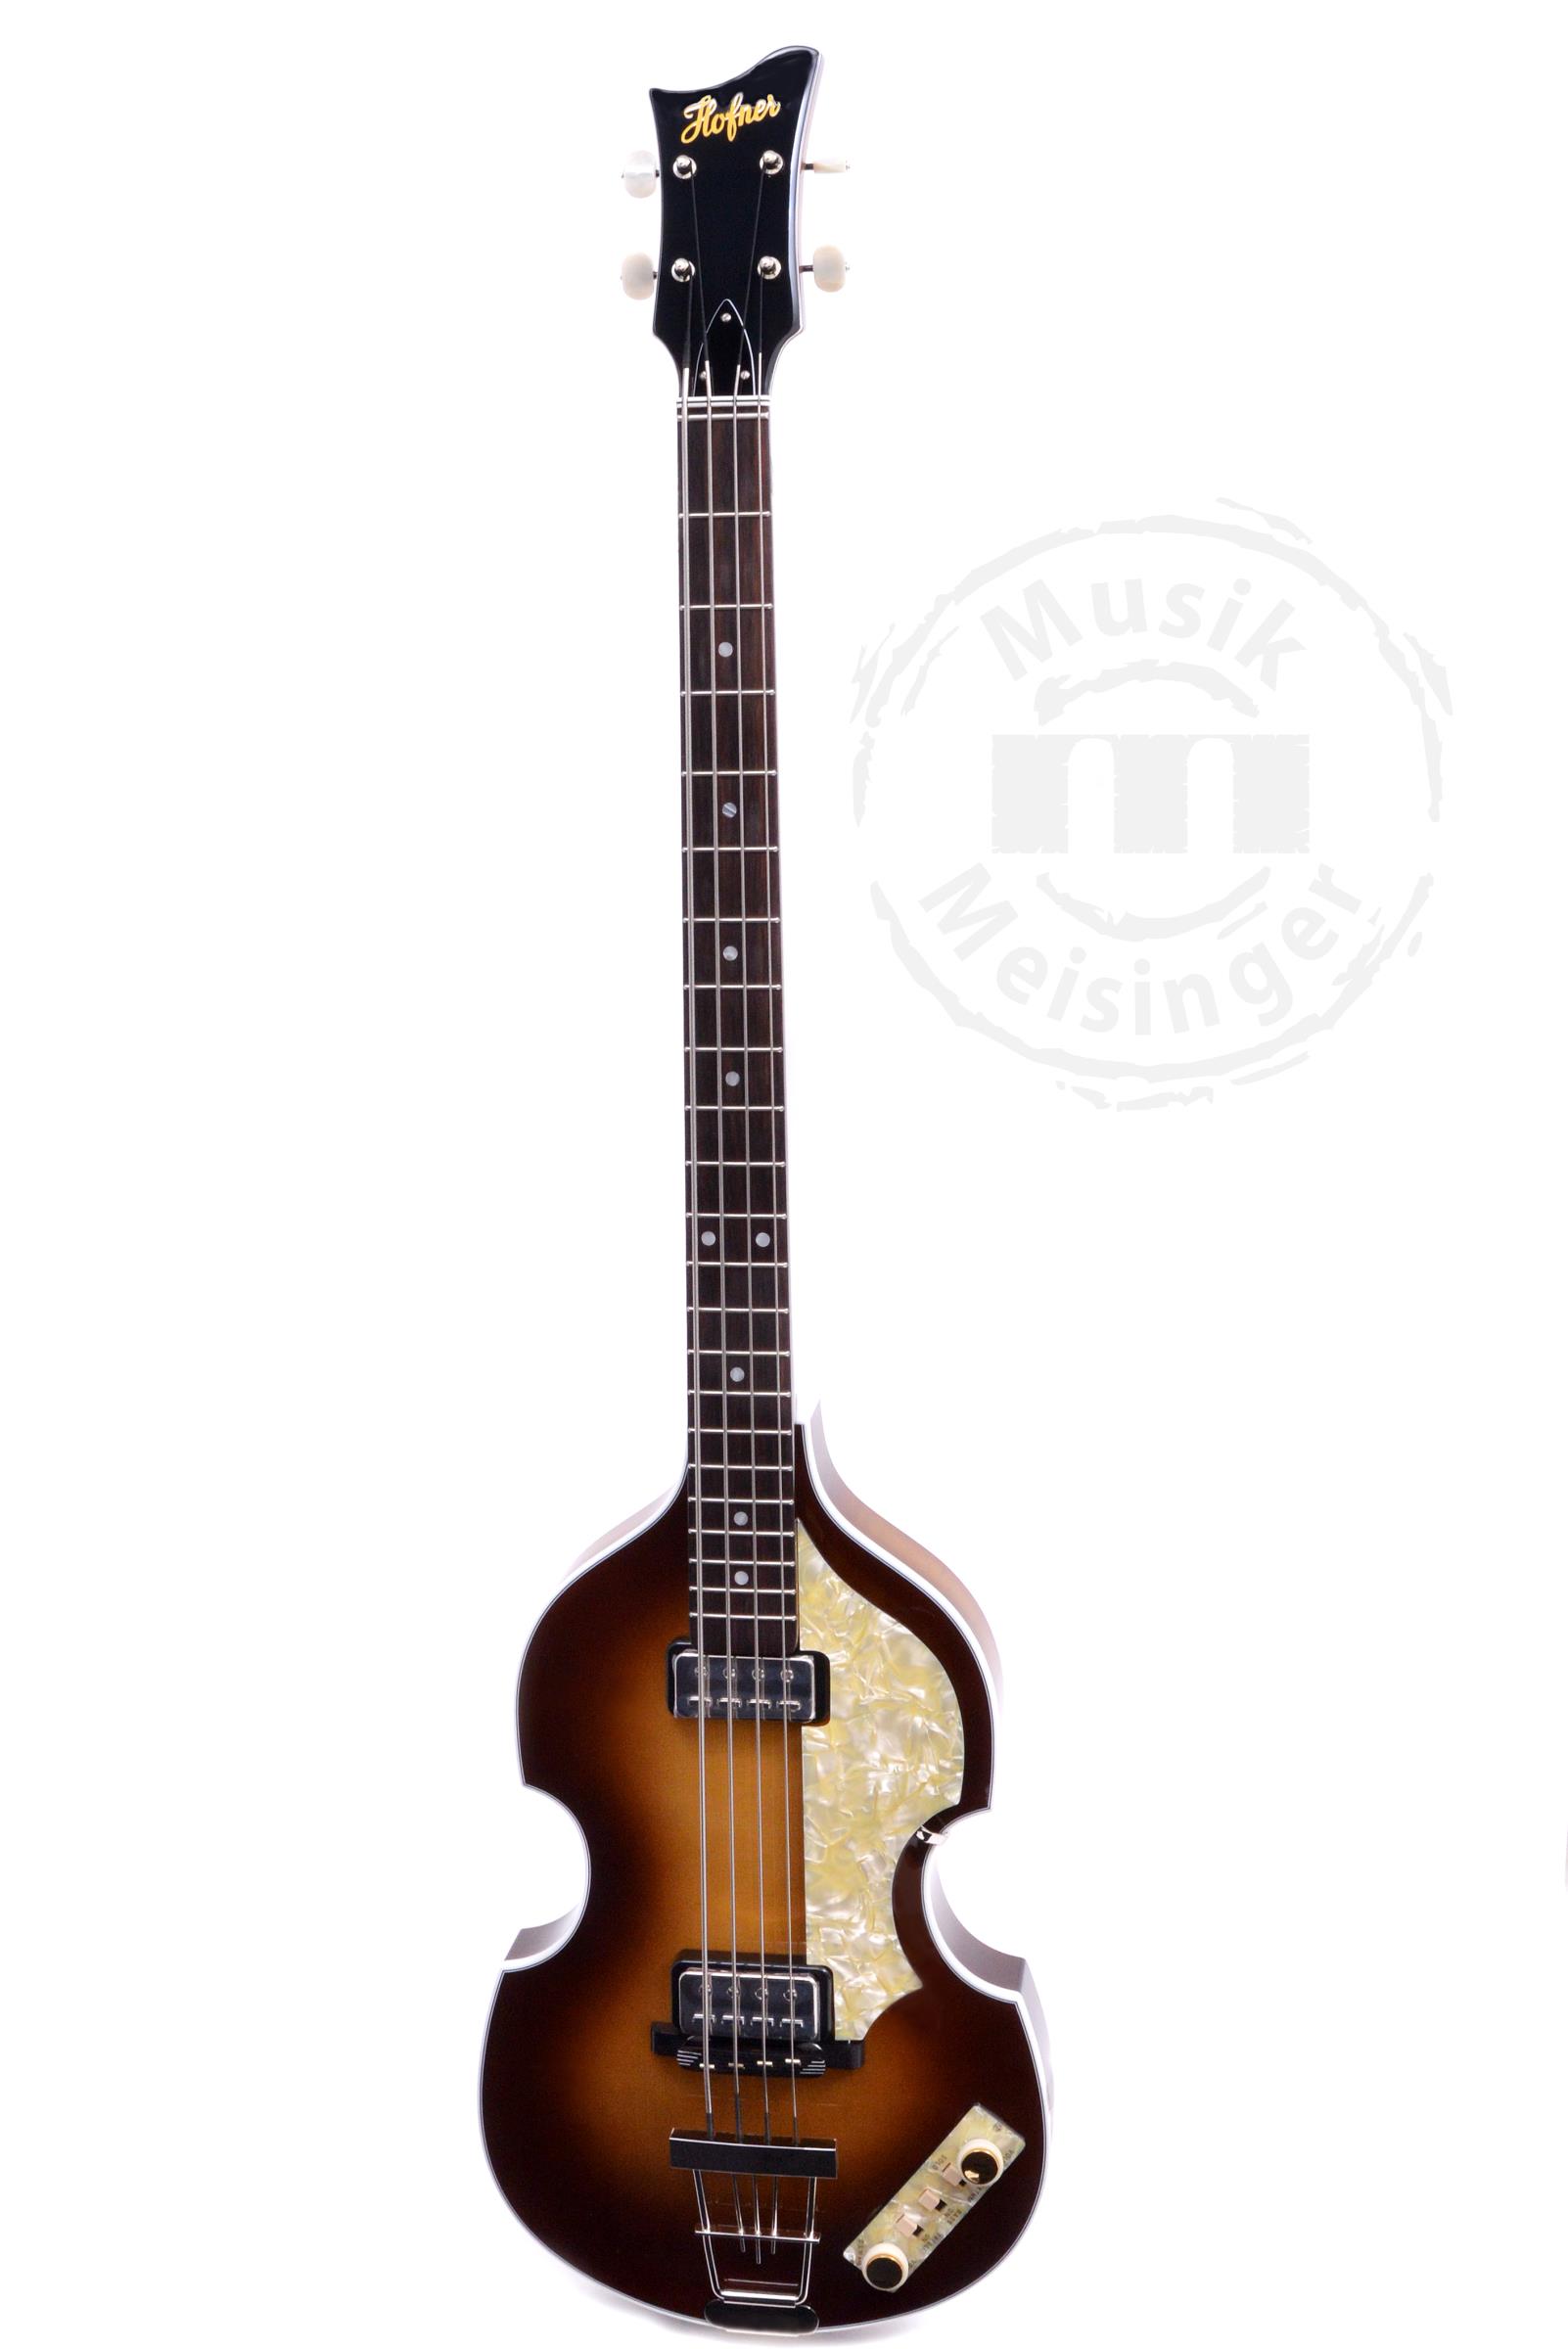 HÖFNER 63 Violin Bass 60th Anniversary Limited Edition